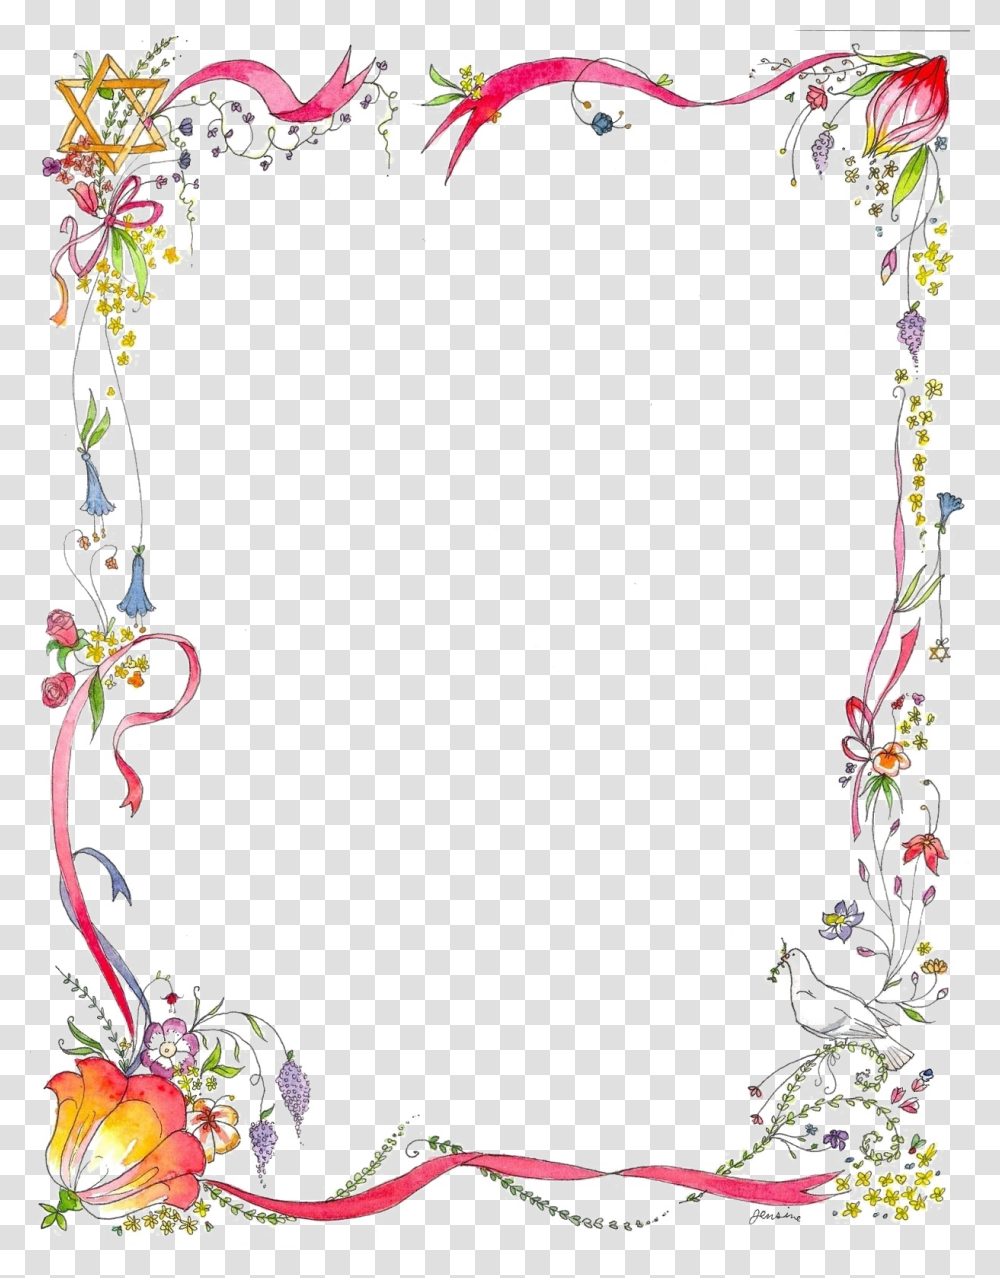 Floral Border Designs Free Image, Floral Design, Pattern Transparent Png